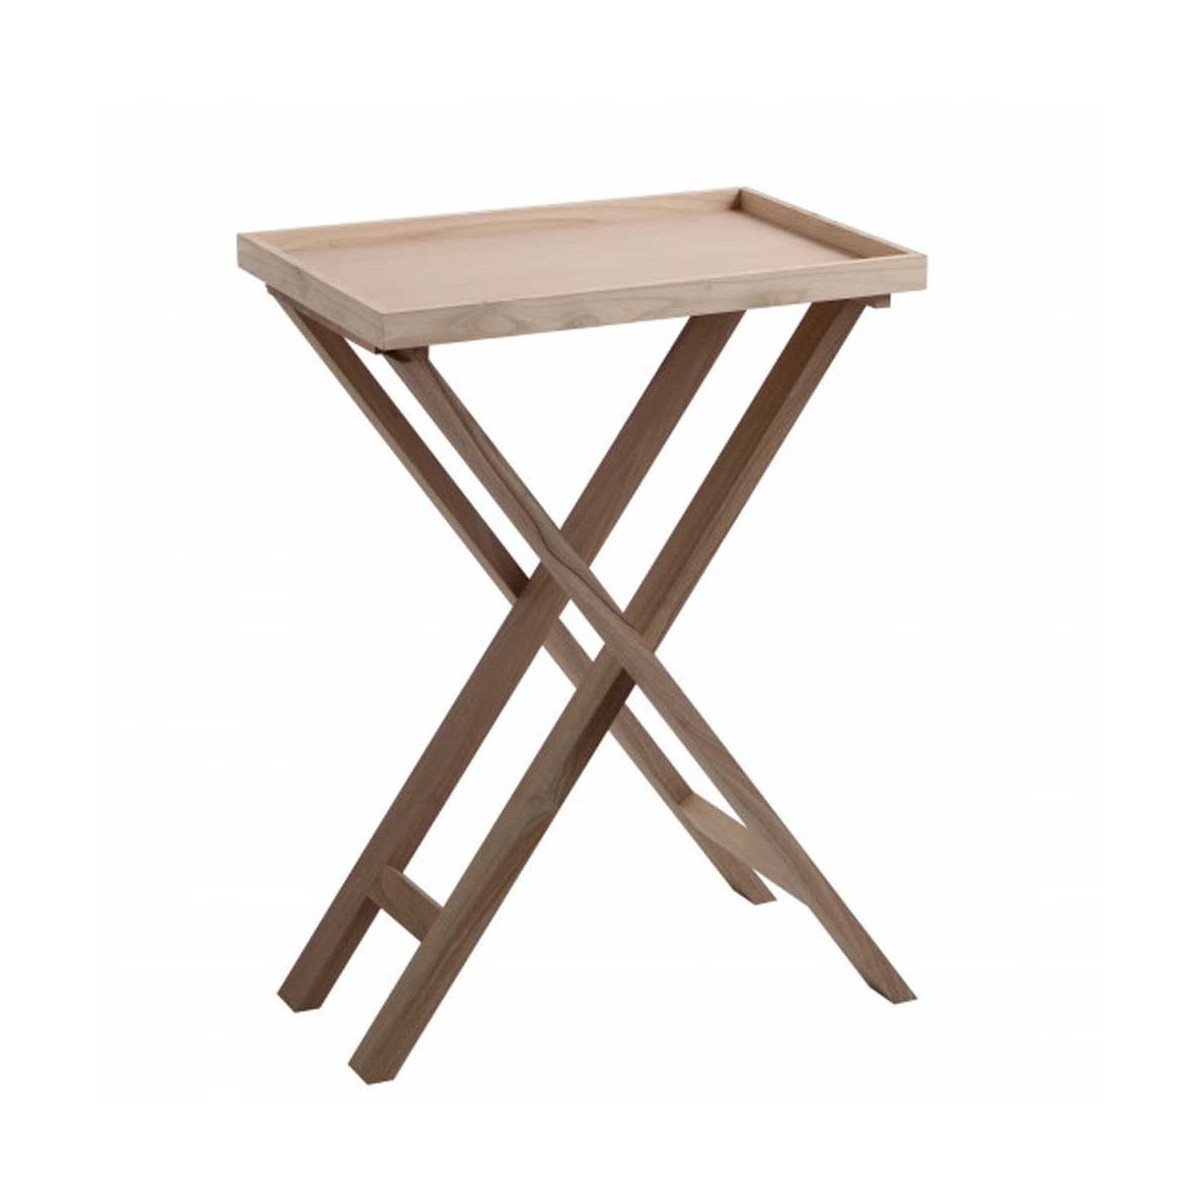  Tavolino in legno con gambe incrociate e bordo contenitore